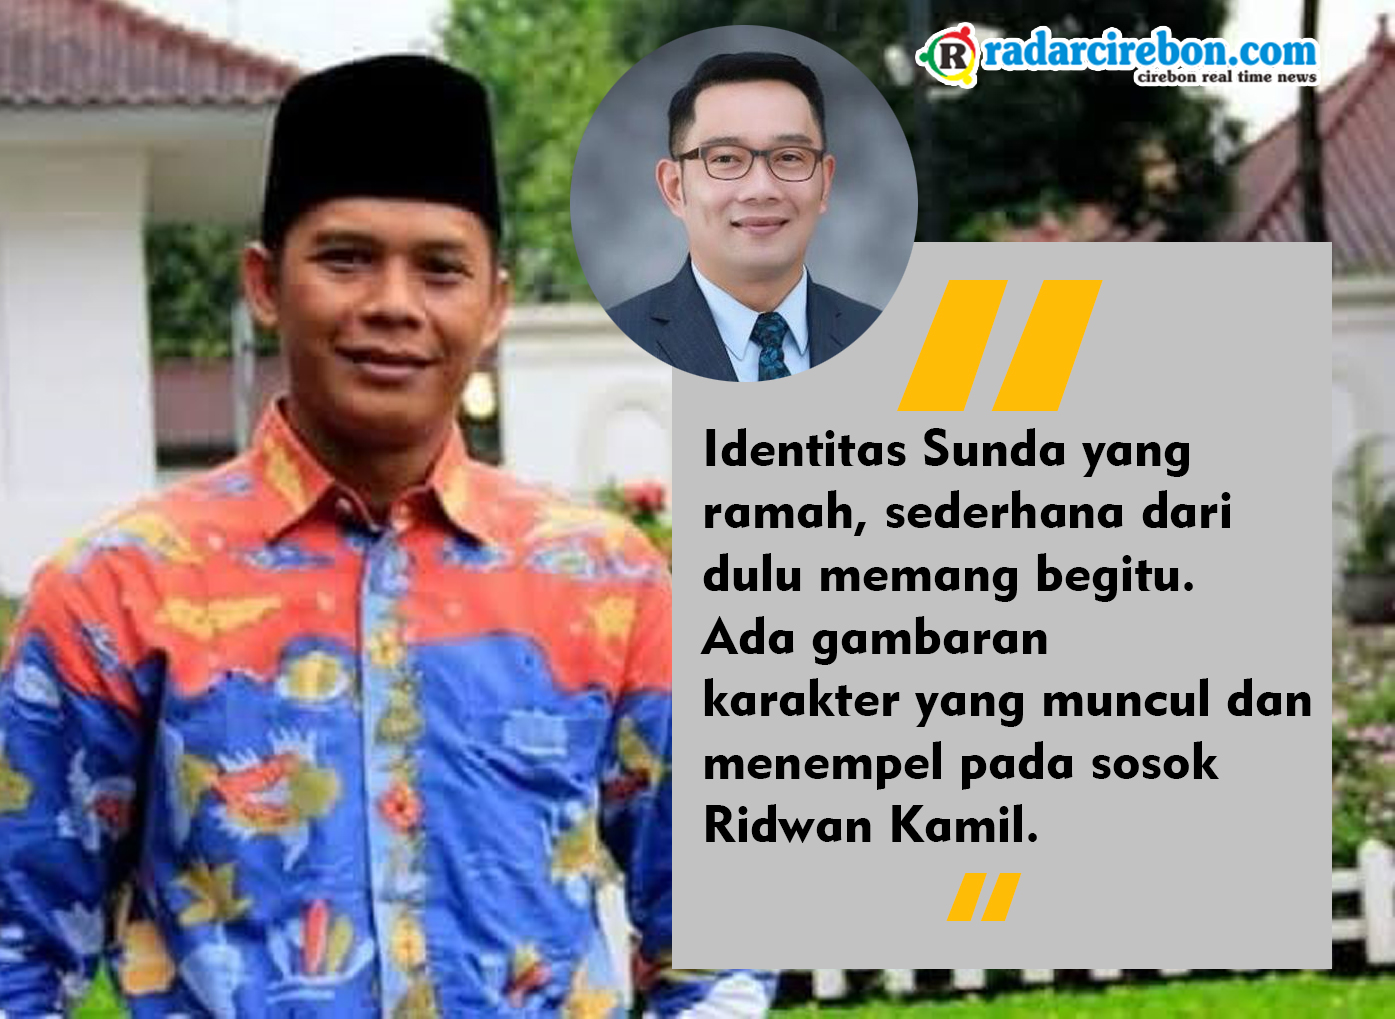 Ridwan Kamil Bisa Menjadi Capres Kebanggaan Jawa Barat, Akademisi Cirebon: Ada Gambaran Karakter...